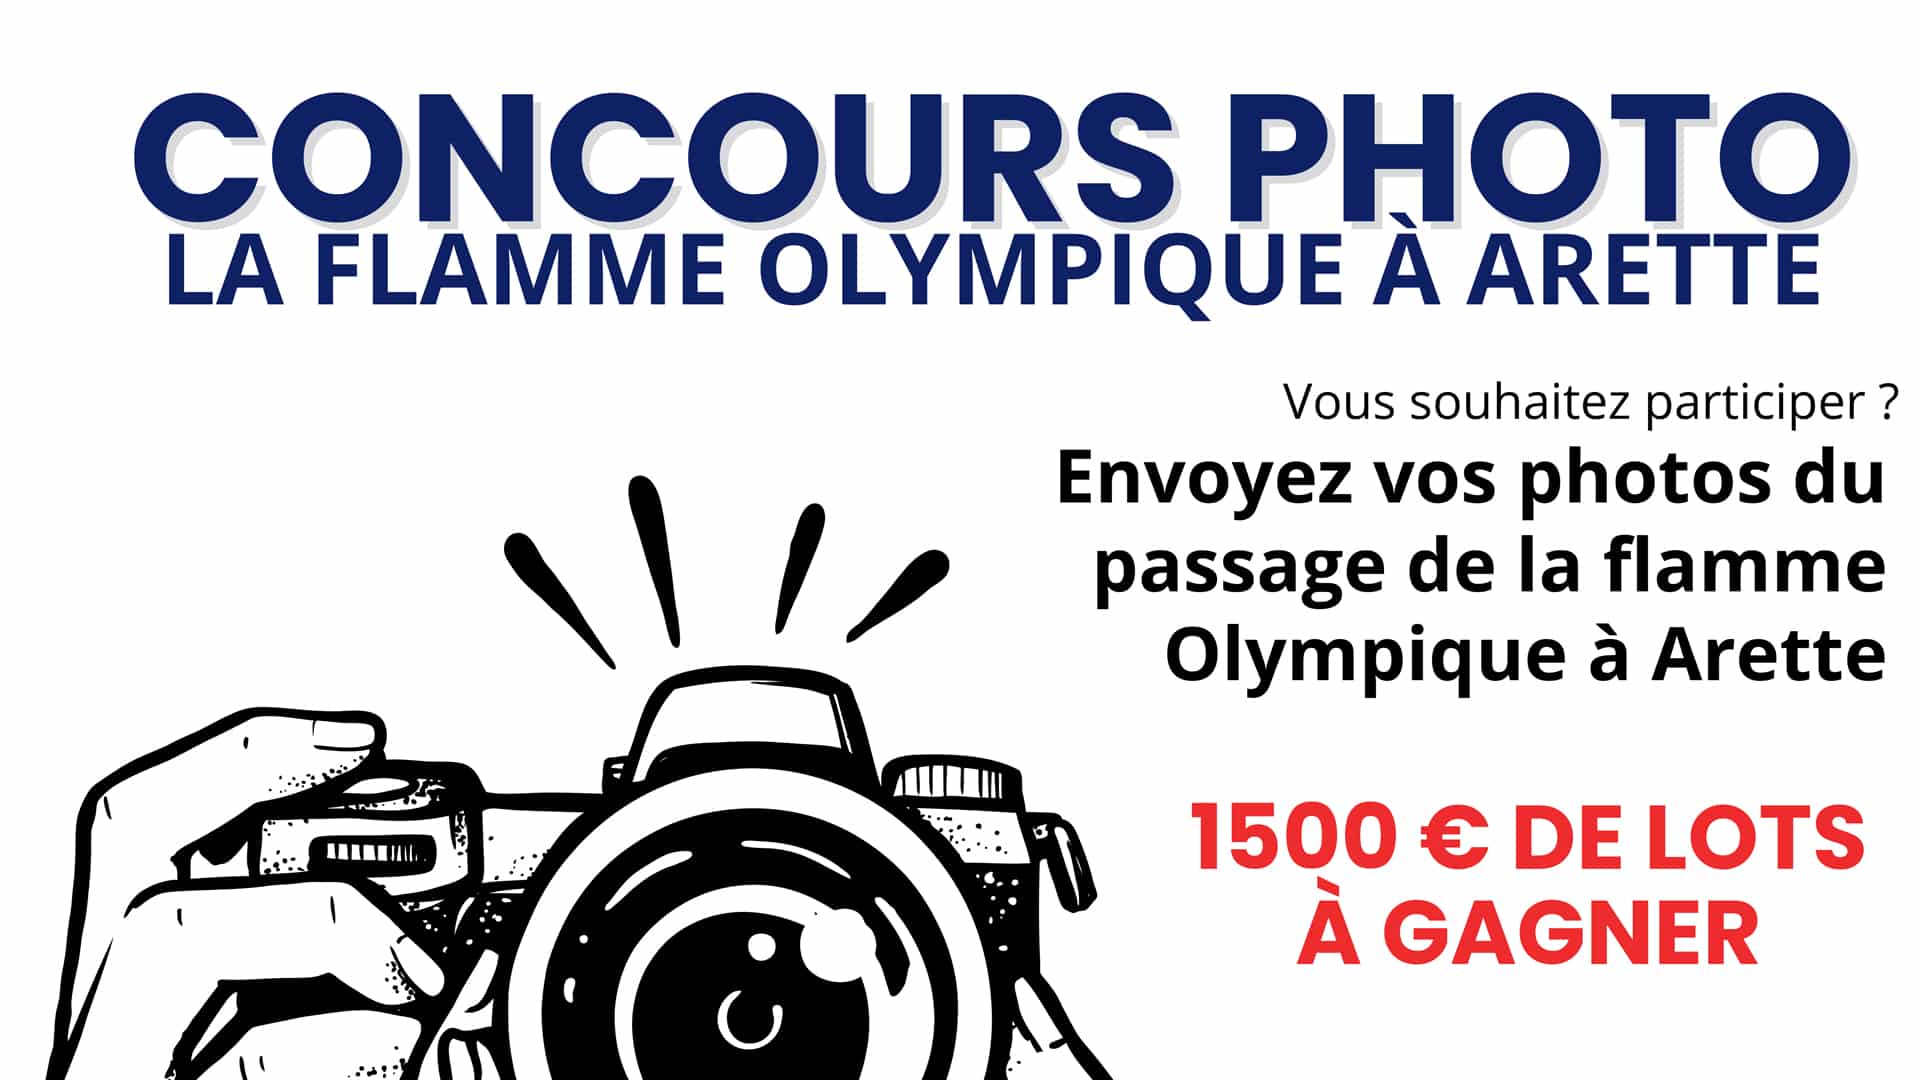 Concours Photo – La flamme Olympique à Arette